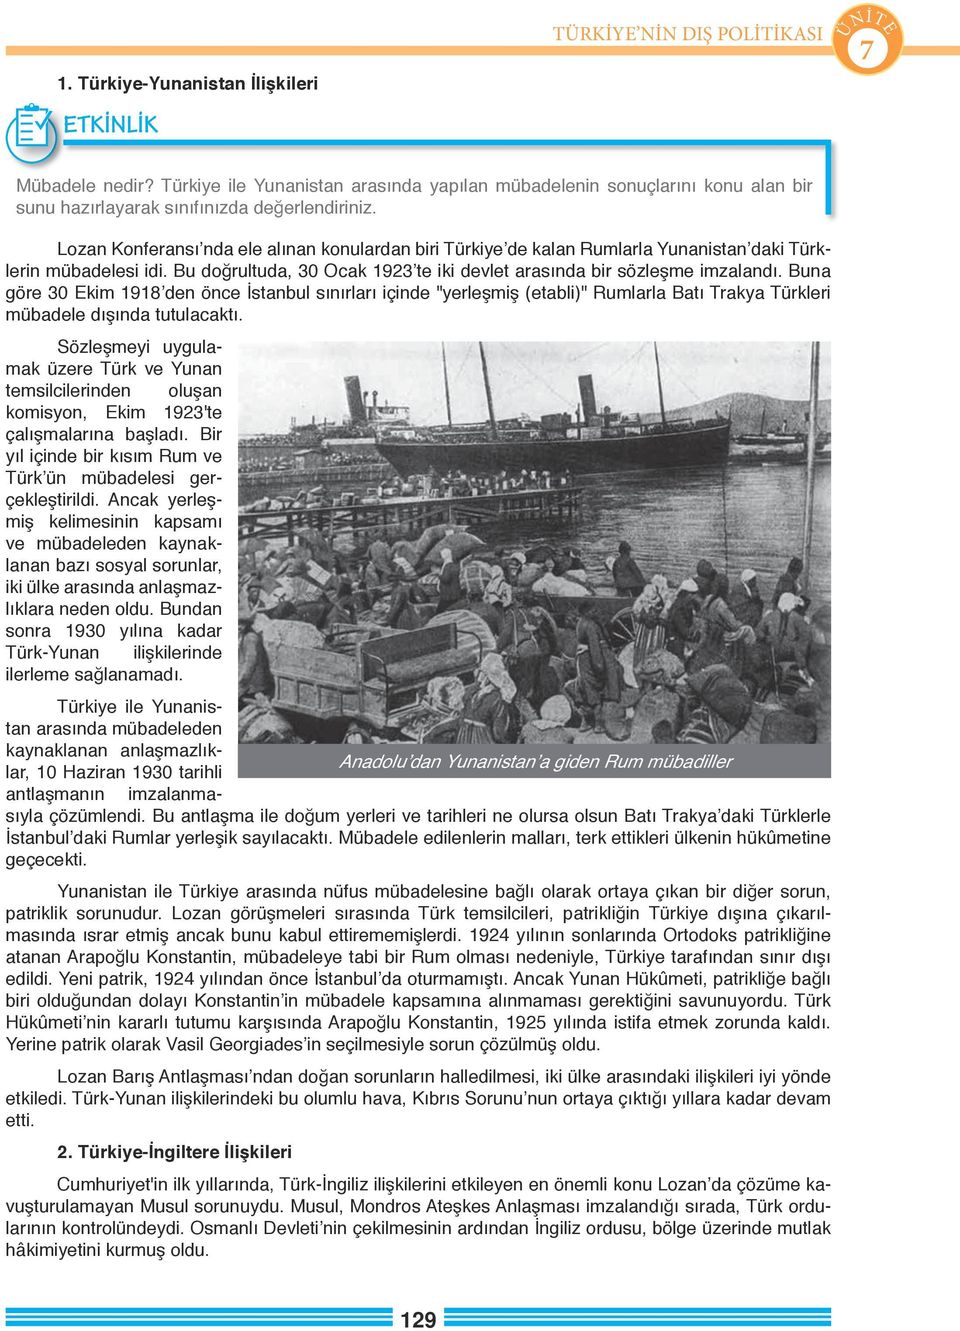 Buna göre 30 Ekim 1918 den önce İstanbul sınırları içinde "yerleşmiş (etabli)" Rumlarla Batı Trakya Türkleri mübadele dışında tutulacaktı.